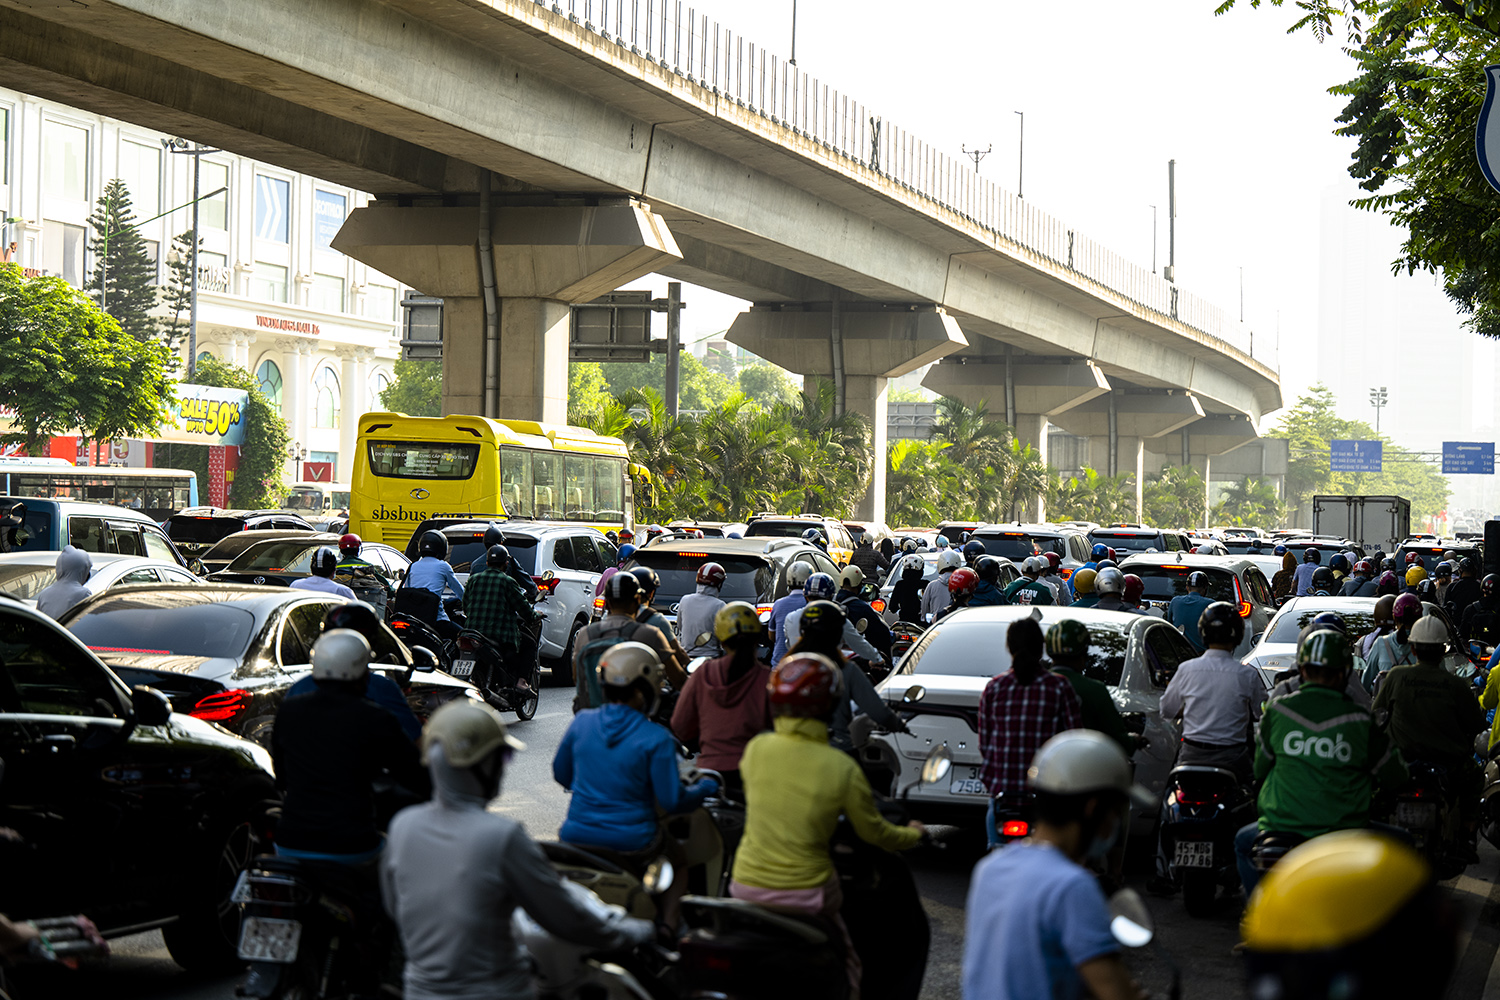 Hà Nội, TP.HCM lại tắc đường kinh hoàng sau nghỉ lễ, người dân chật vật tới nơi làm việc - 6